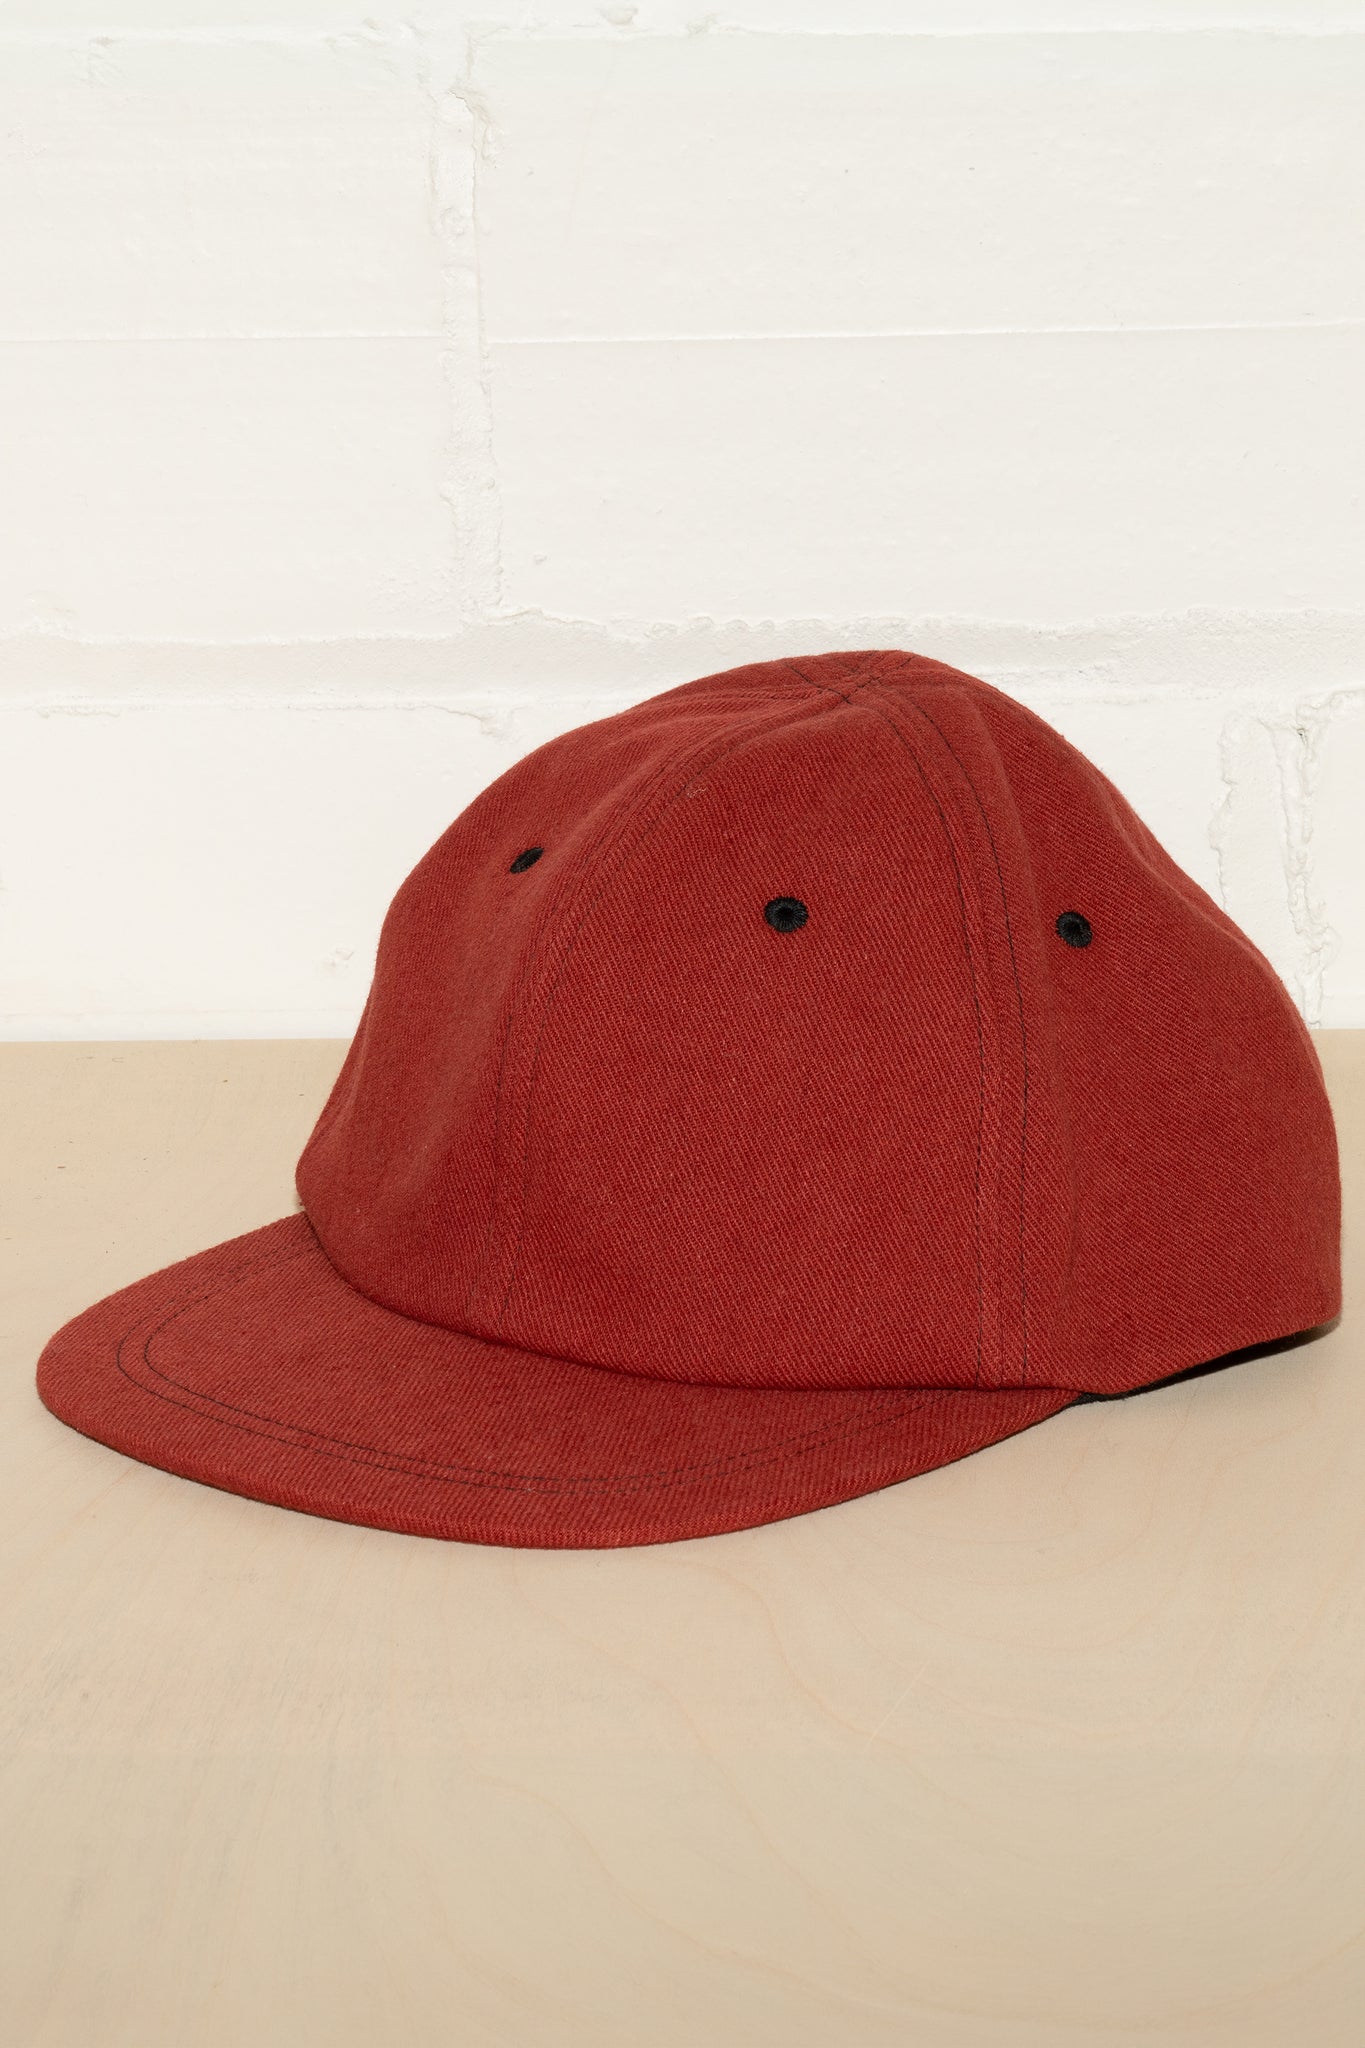 FLUFFY HEMP HAT IN RED